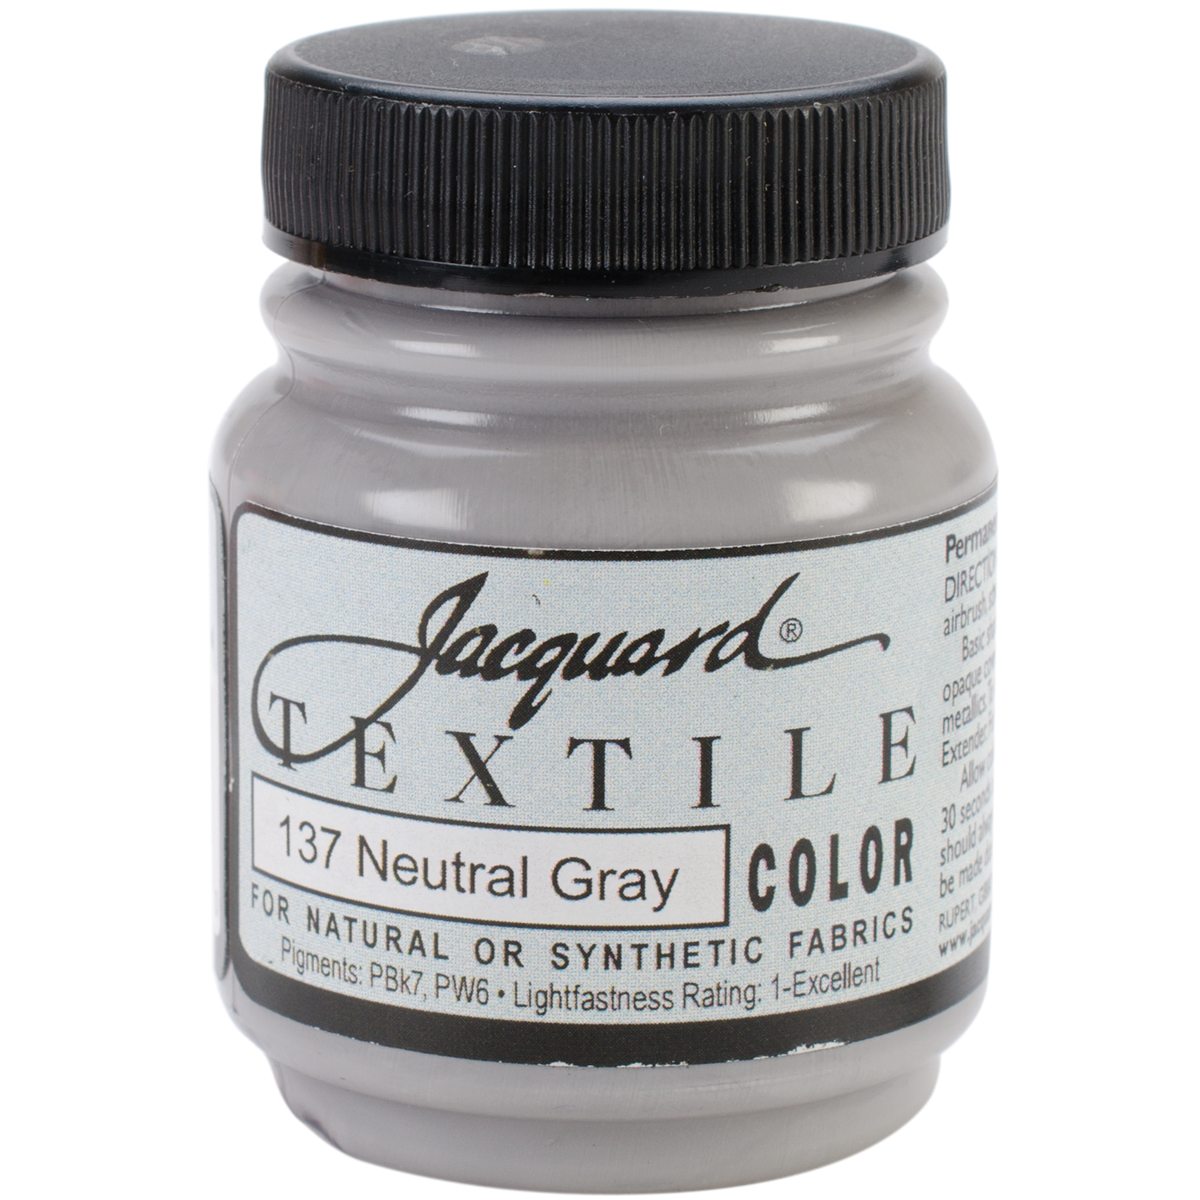 Jacquard Textile Color Fabric Paint 2.25oz-Neutral Gray, Set Of 3